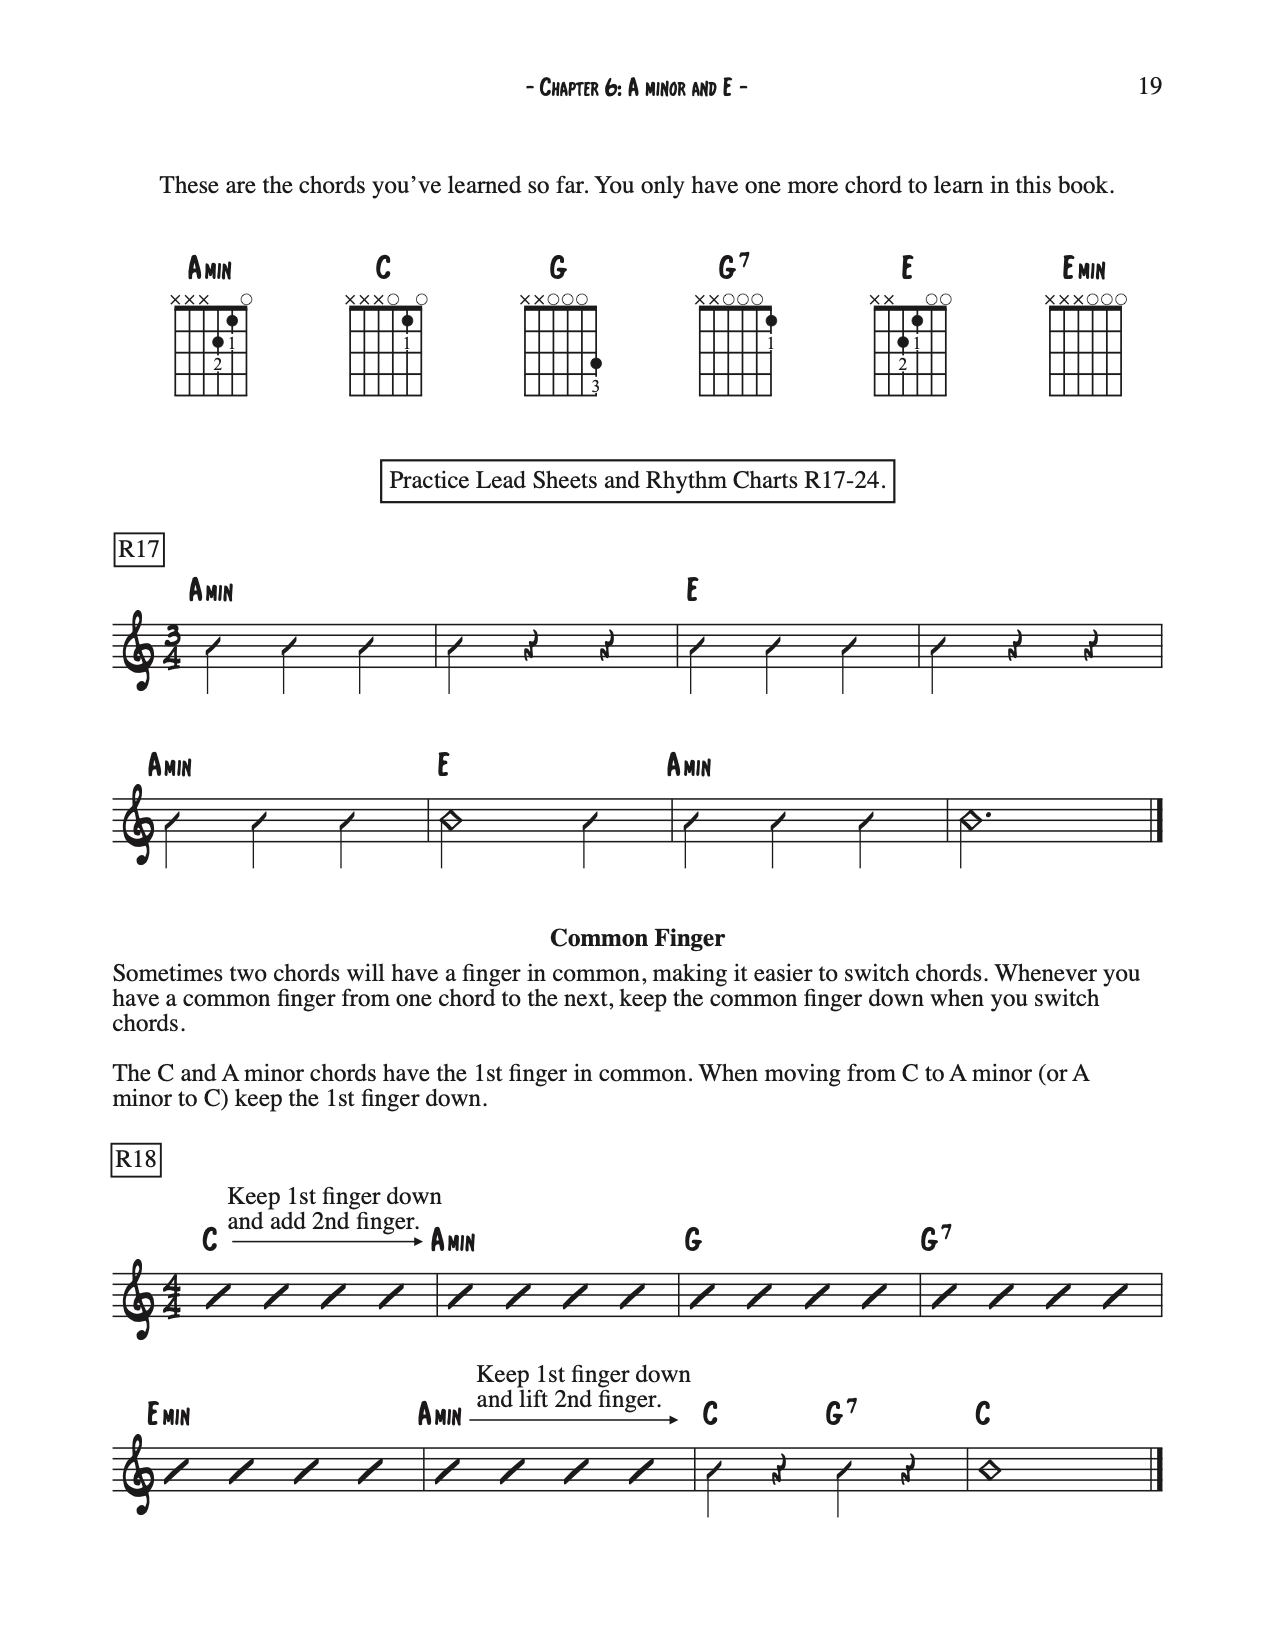 Rhythm Guitar Book 1 (DIGITAL DOWNLOAD)